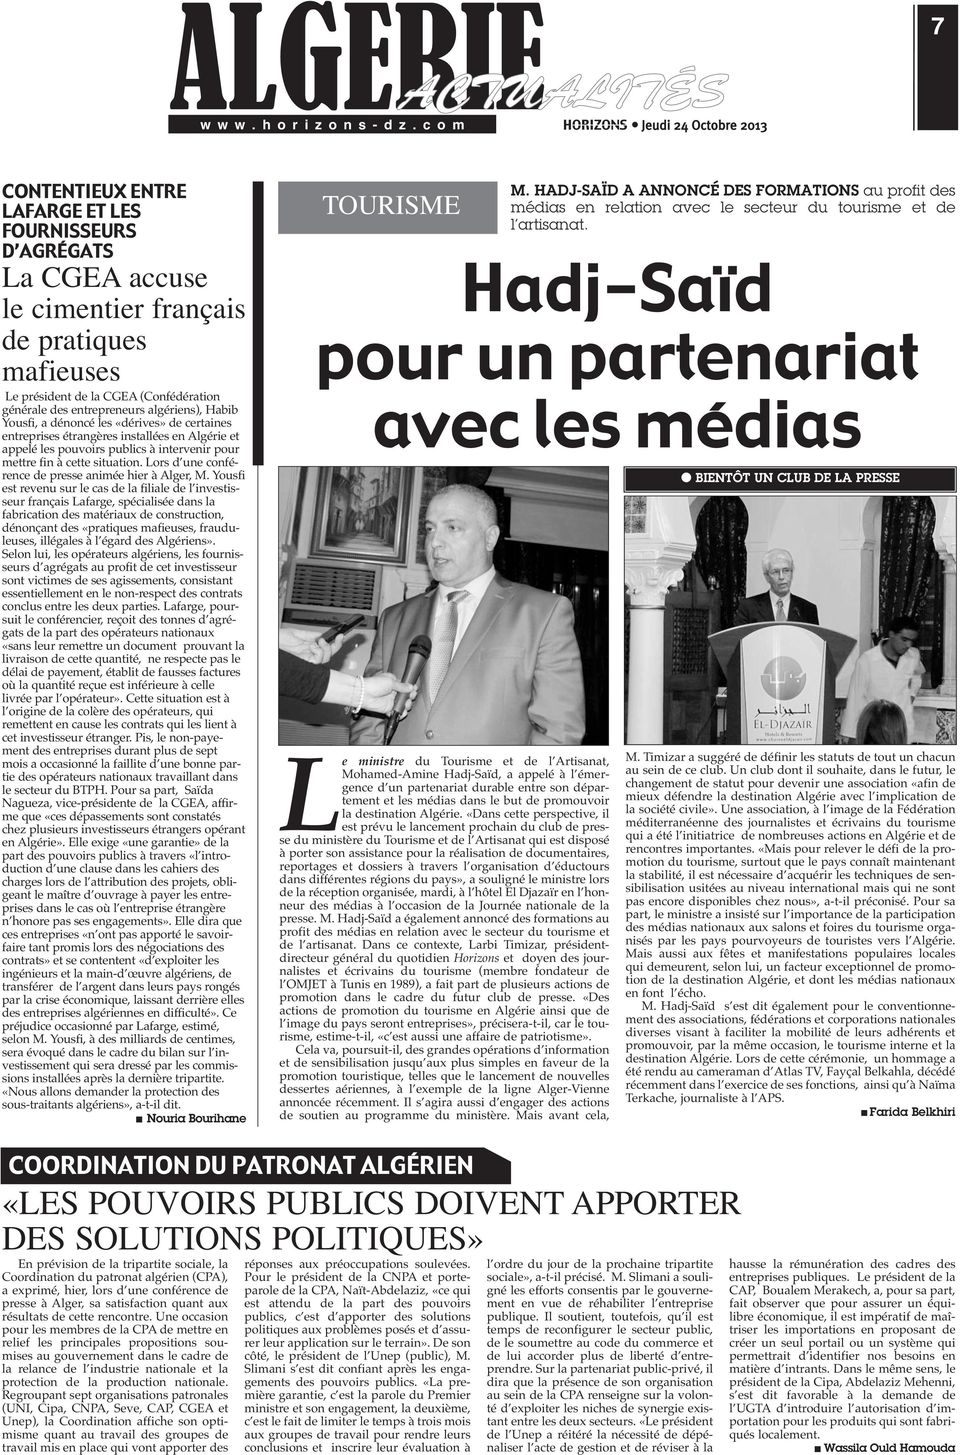 entrepreneurs algériens), Habib Yousfi, a dénoncé les «dérives» de certaines entreprises étrangères installées en Algérie et appelé les pouvoirs publics à intervenir pour mettre fin à cette situation.